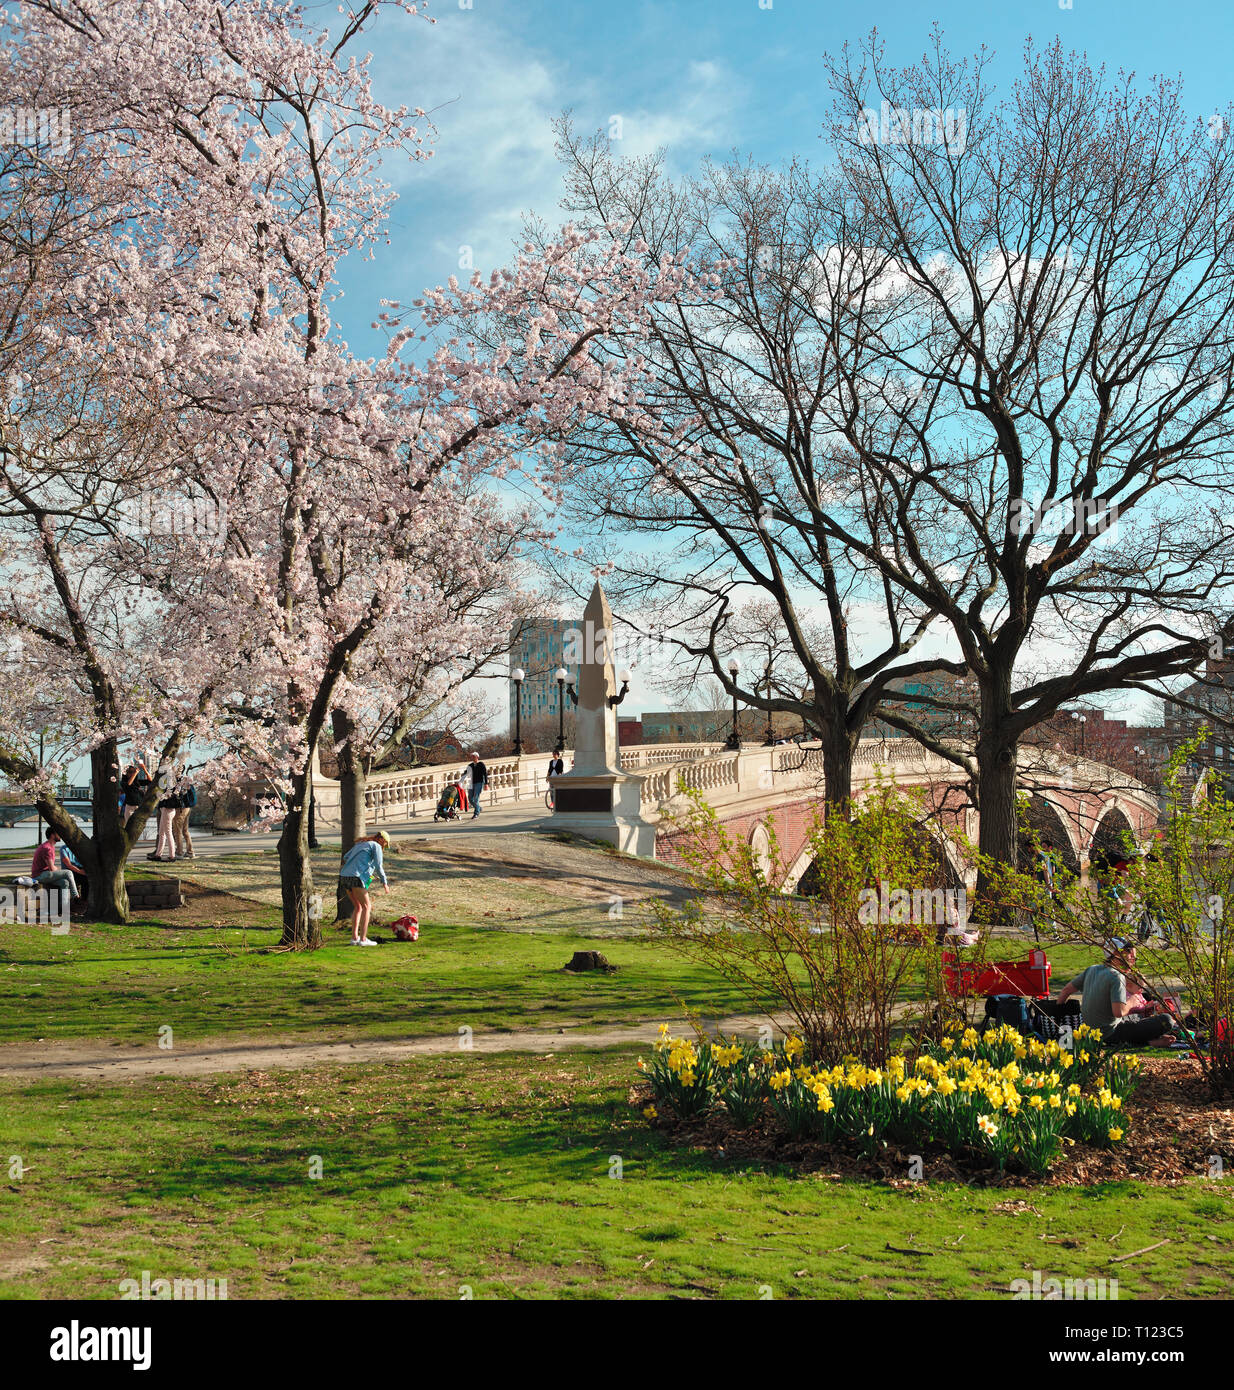 Wochen Fußgängerbrücke im frühen Frühling. Die Menschen kommen aus dem schönen Wetter unter Kirschblüten und Narzissen am Charles River Bank zu genießen. Cambridge, MA Stockfoto